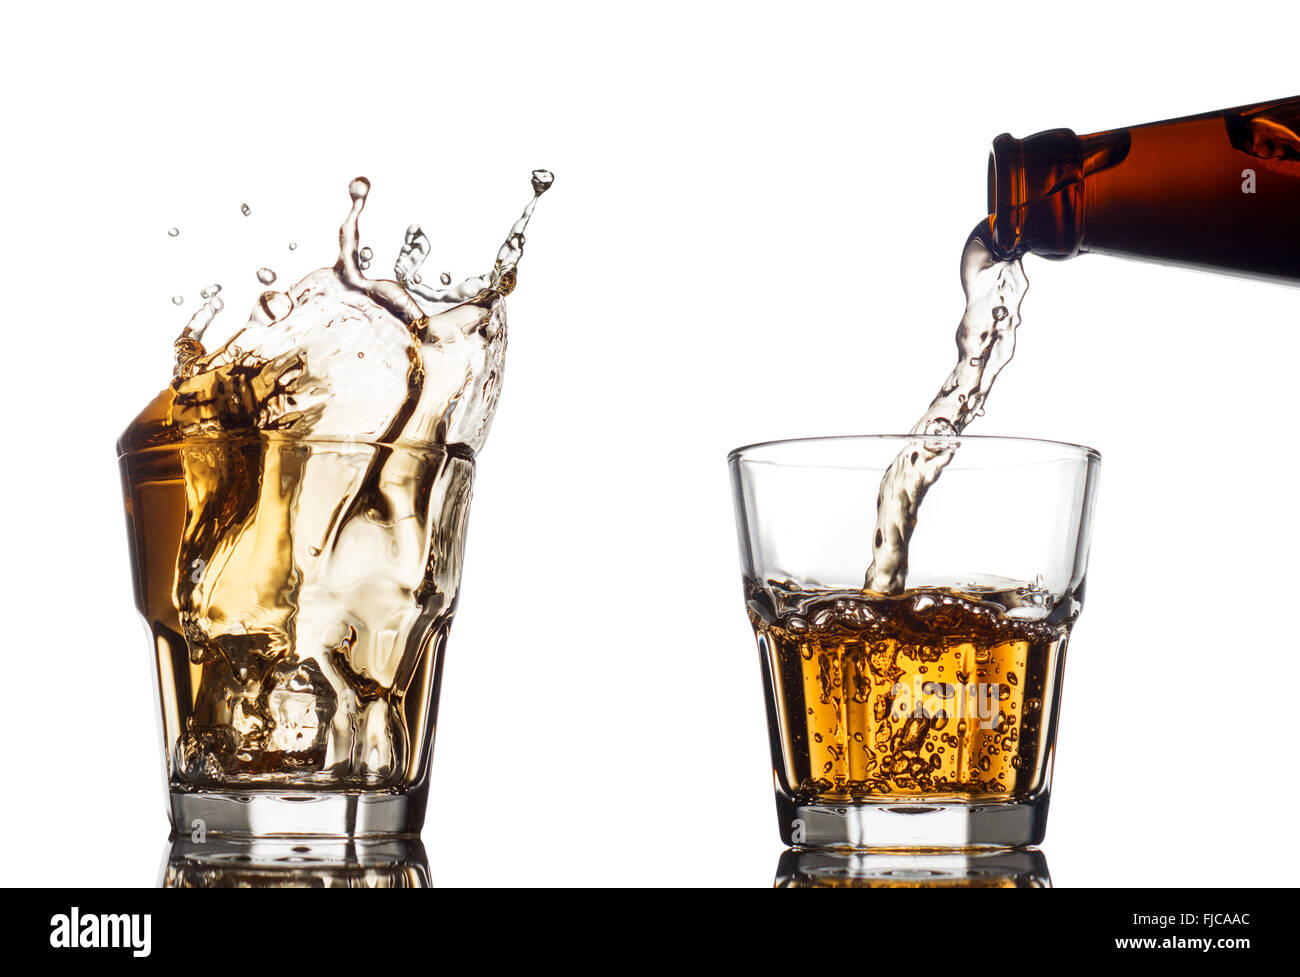 Verter el whisky en un vidrio claro, sobre fondo blanco. Foto de stock